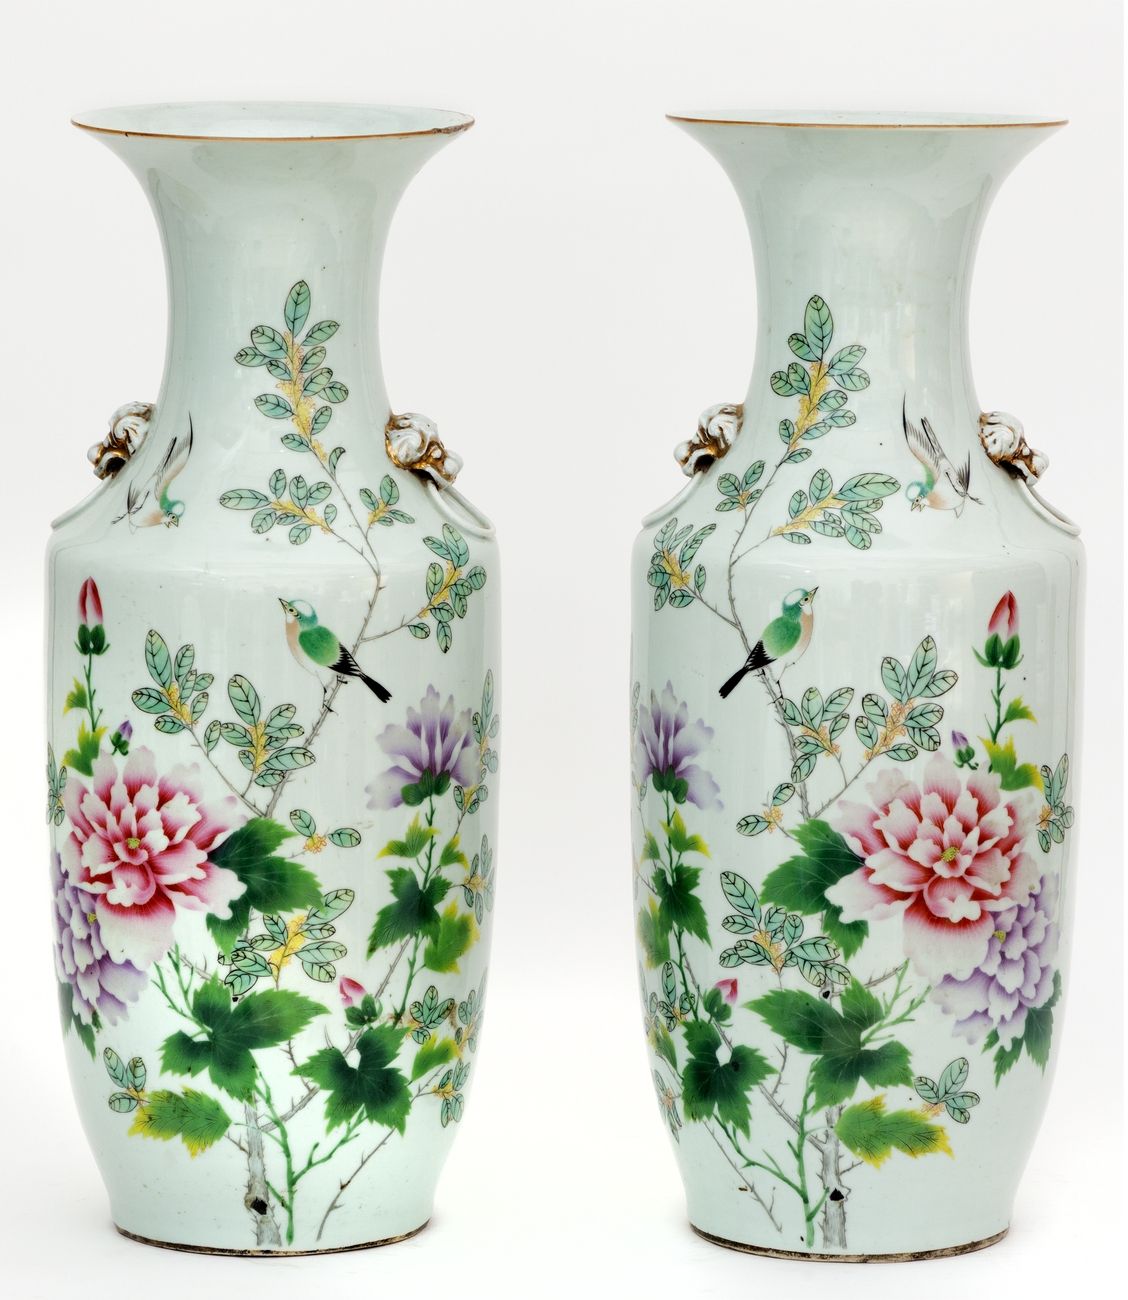 Null Cina, XIX-XX secolo
Una coppia di vasi in porcellana con decorazione in sma&hellip;